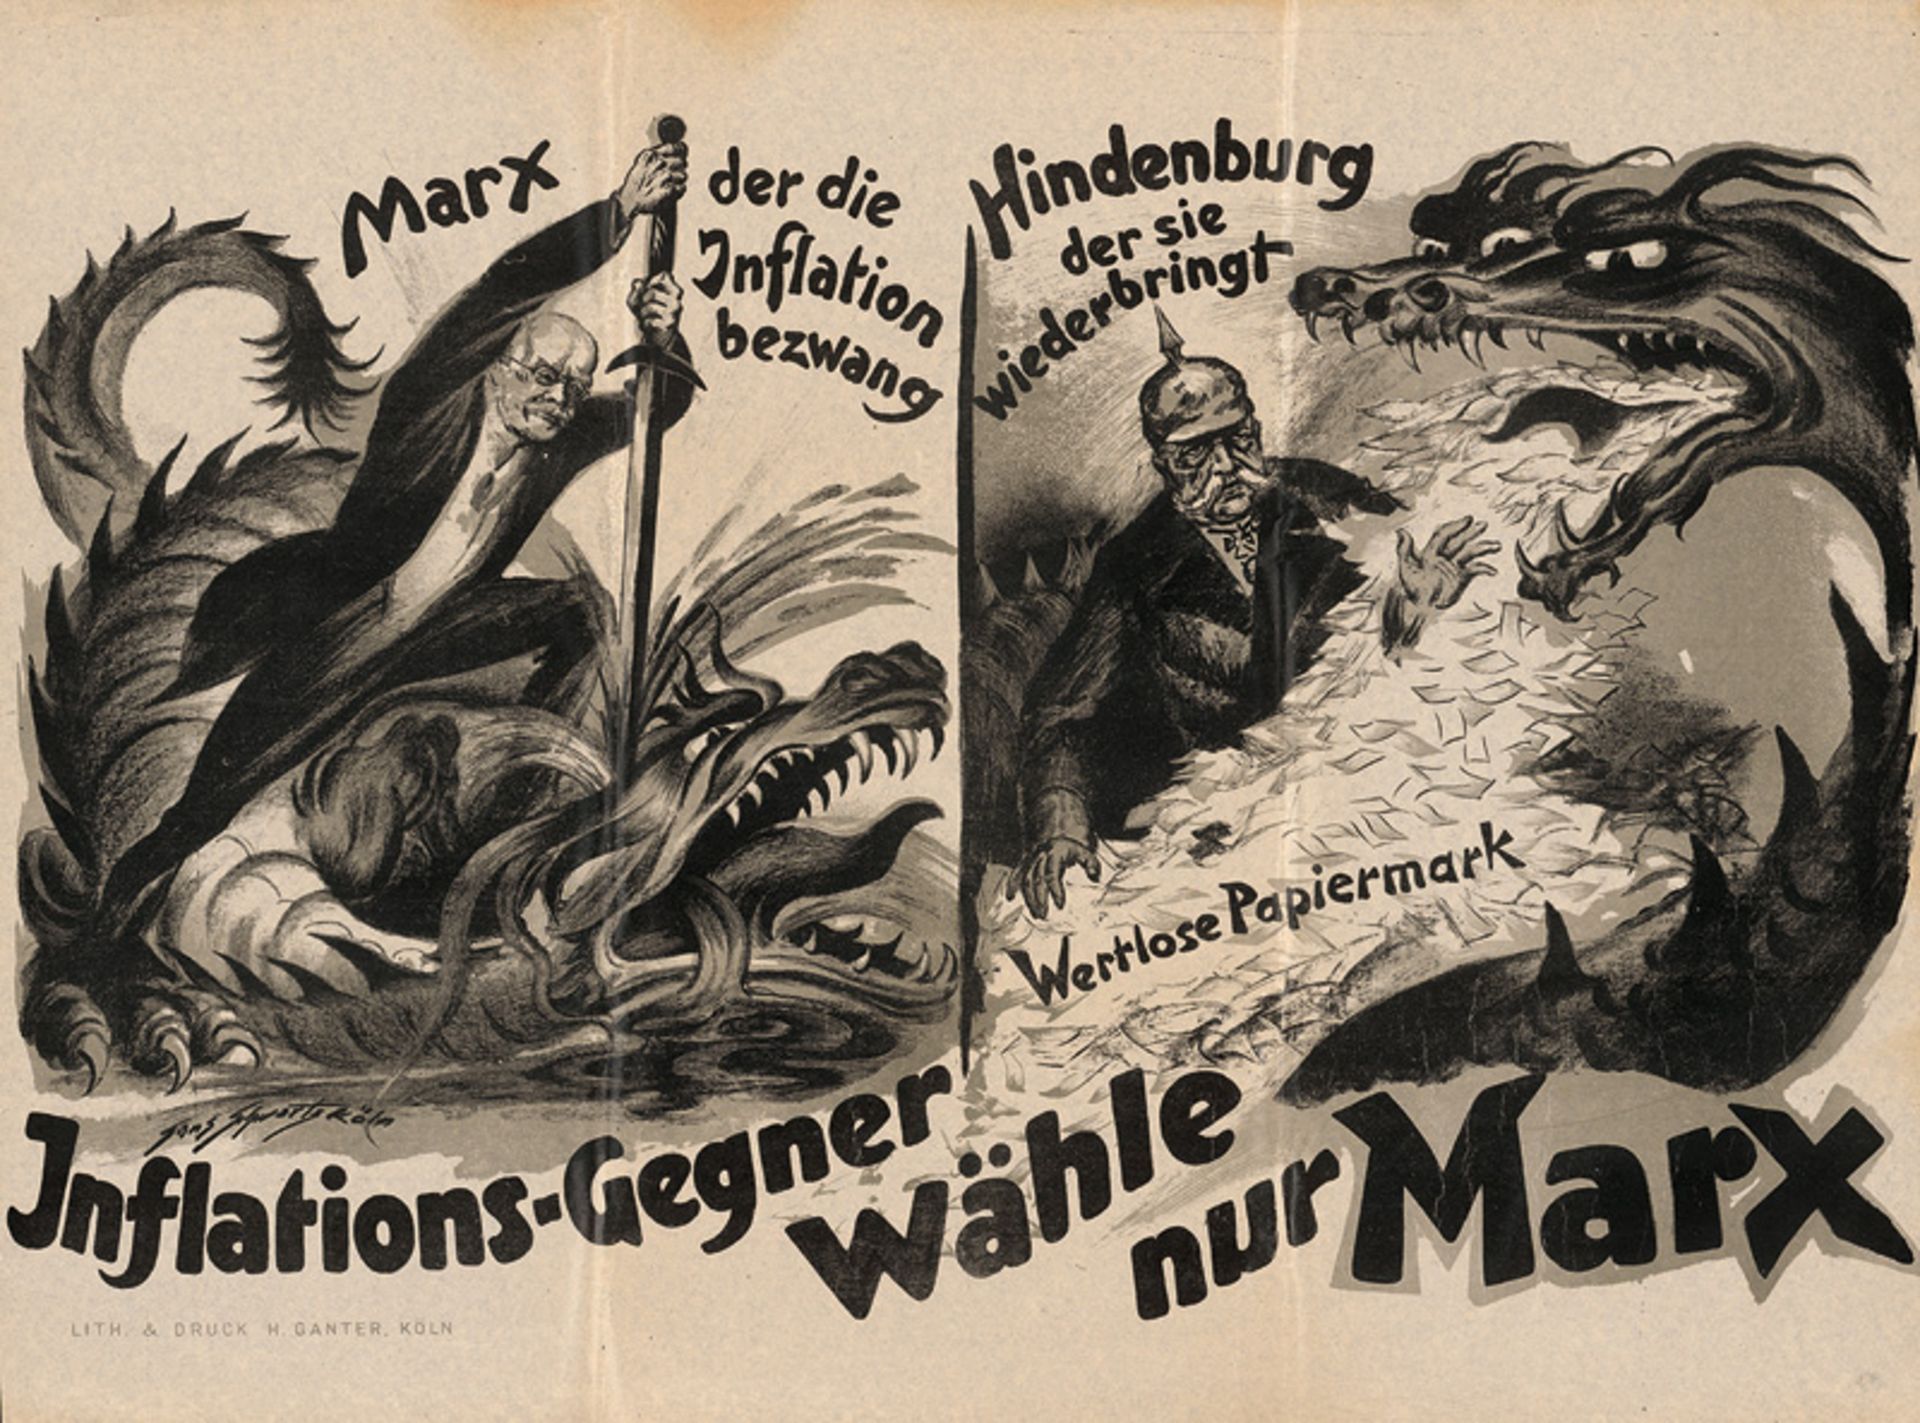 Schwartz, Hans: Inflations-Gegner wähle nur Marx. Plakat